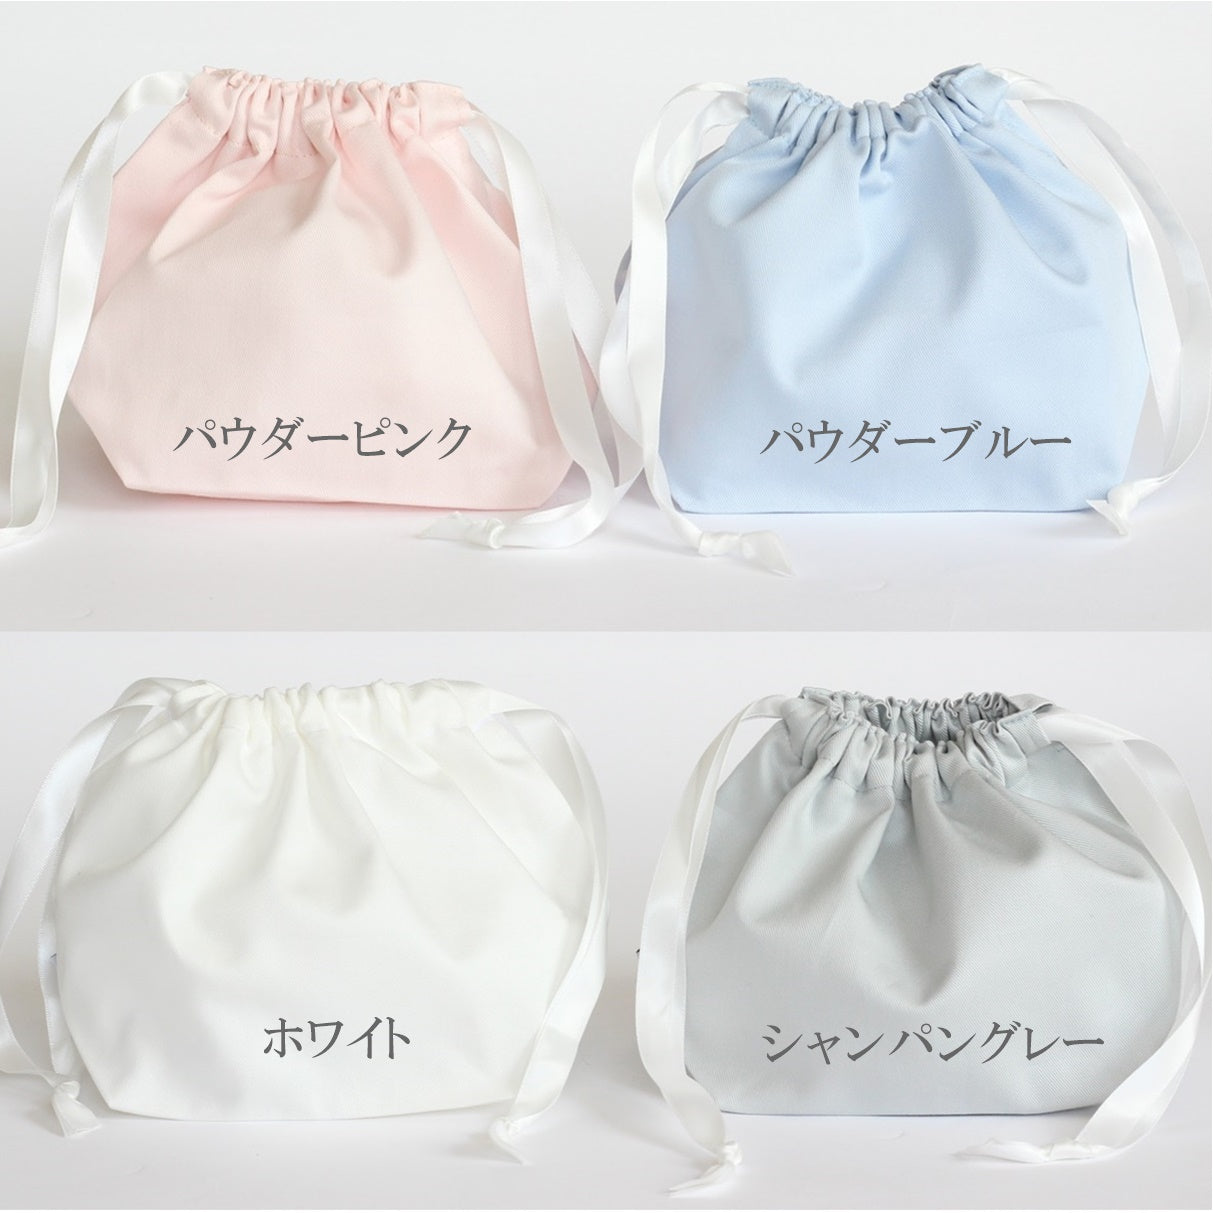 ポニーの名入れ刺繍巾着袋3種類セット